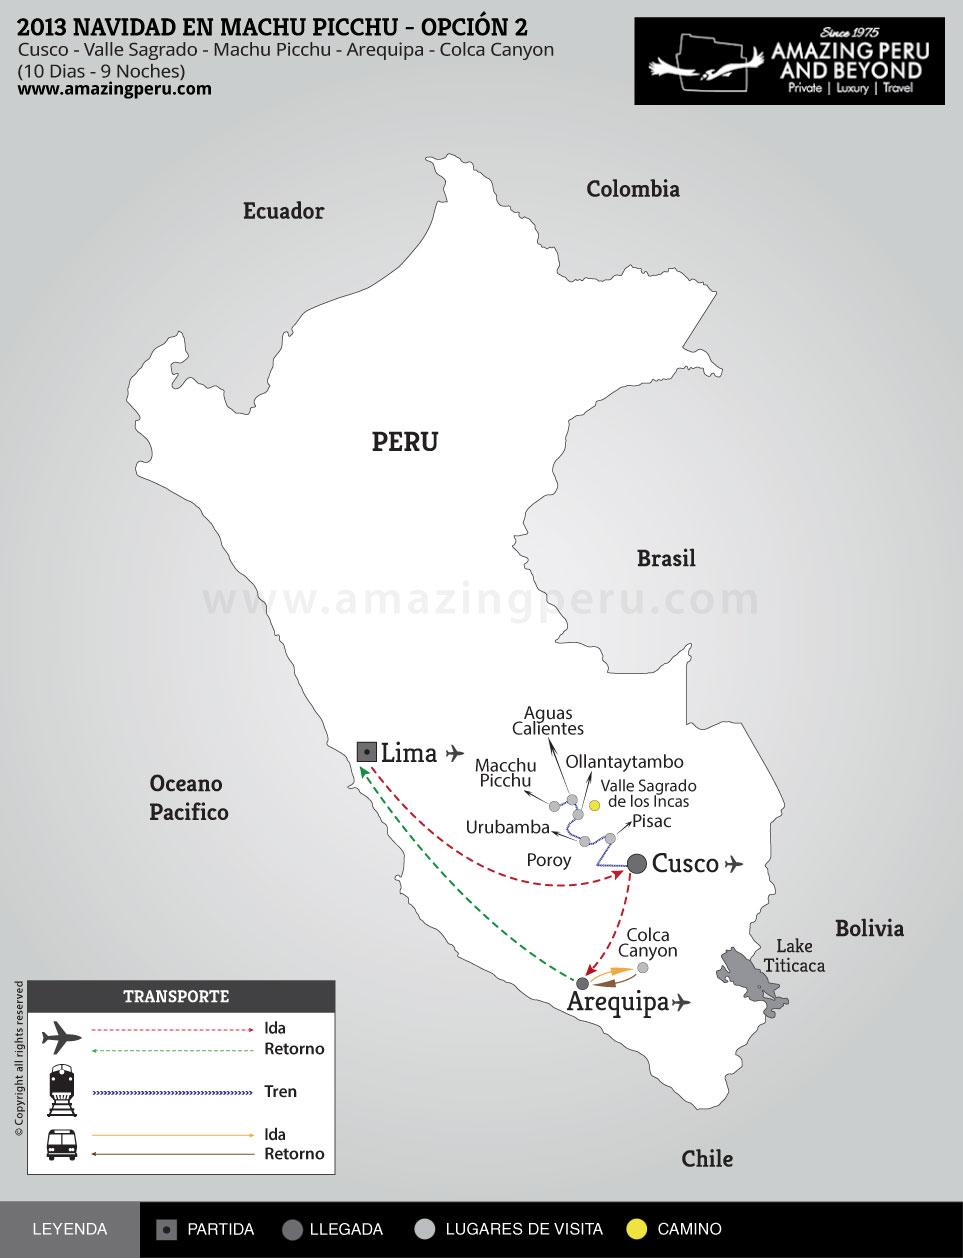 2023 Tour de Navidad en Machu Picchu - Opción 2